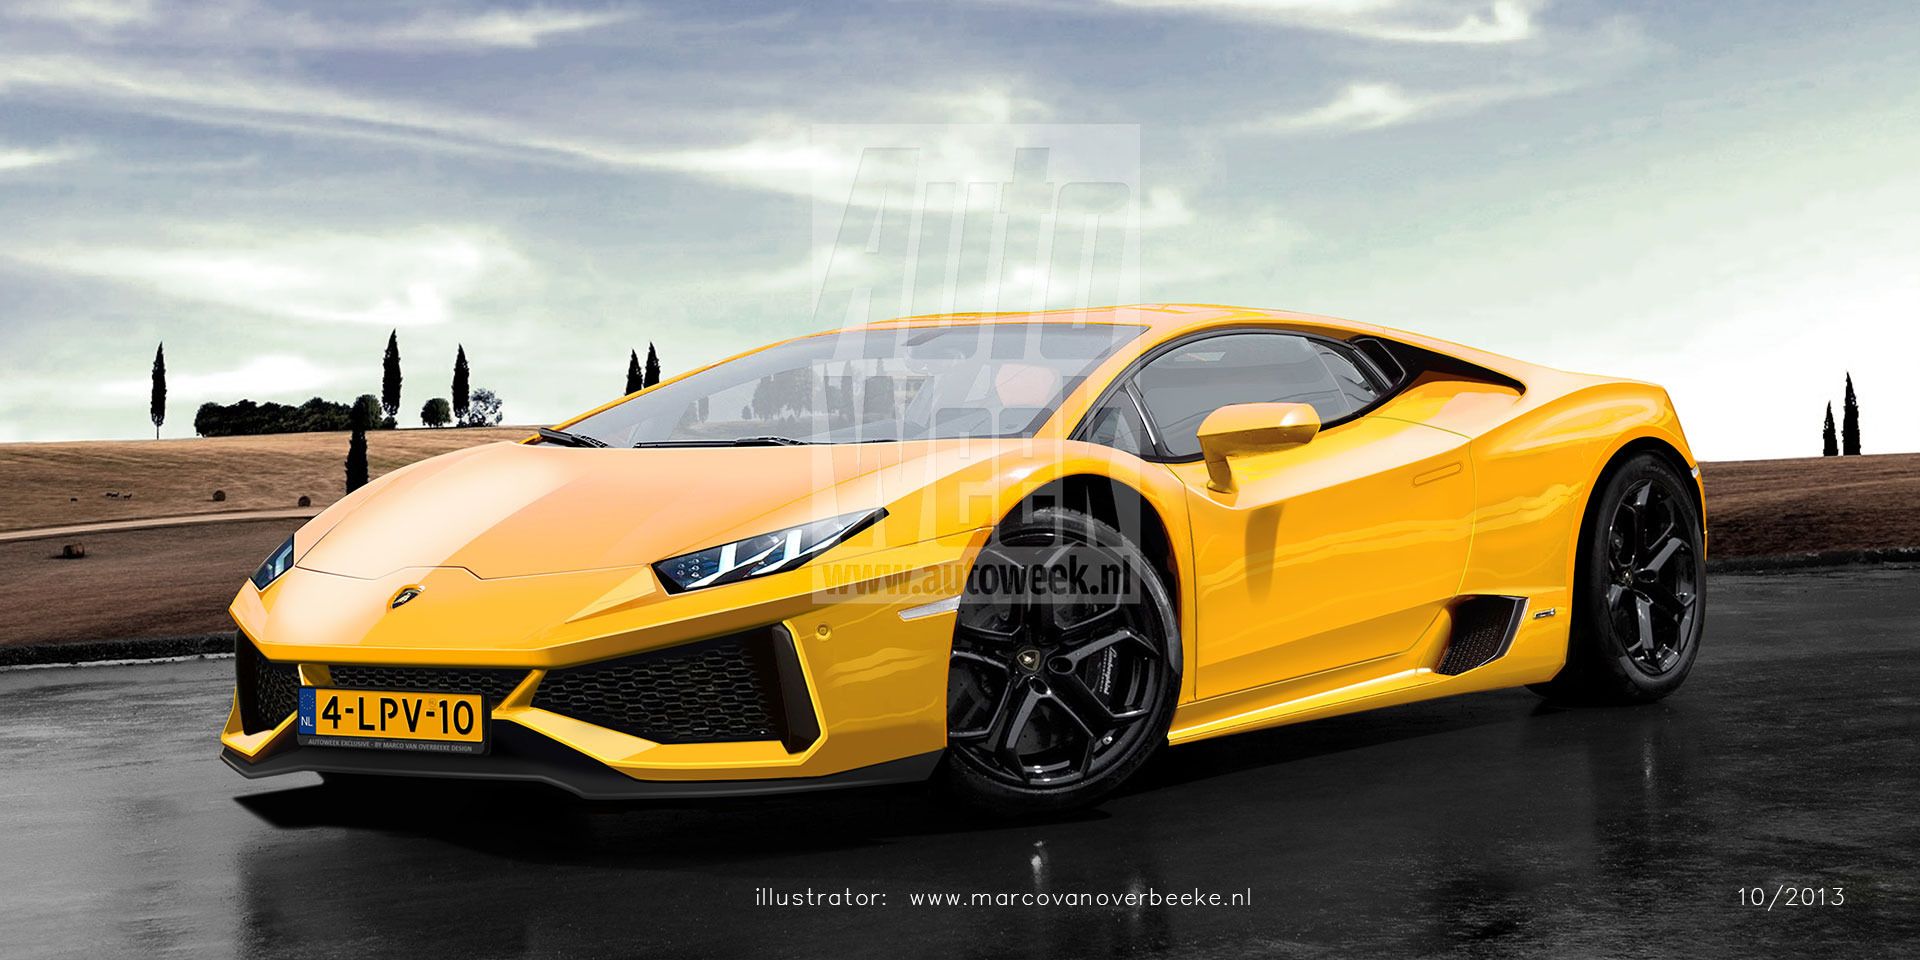 Wallpaper Full HD 1080p Lamborghini New